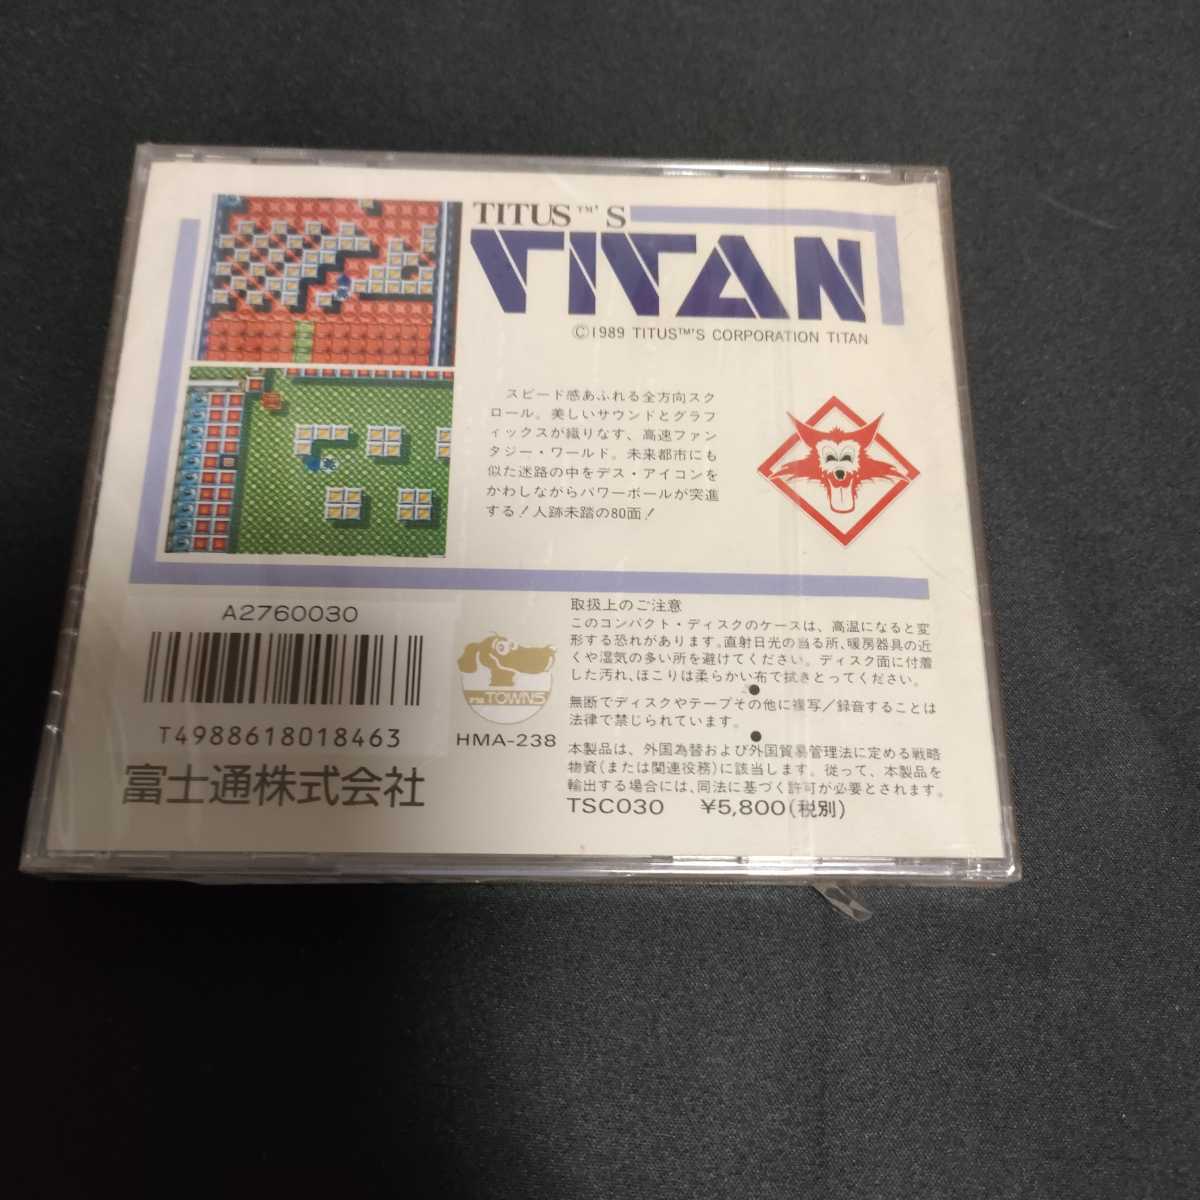 FM TOWNS soft коллекция за границей сборник 5 Titan TITAN новый товар? MARTY соответствует 